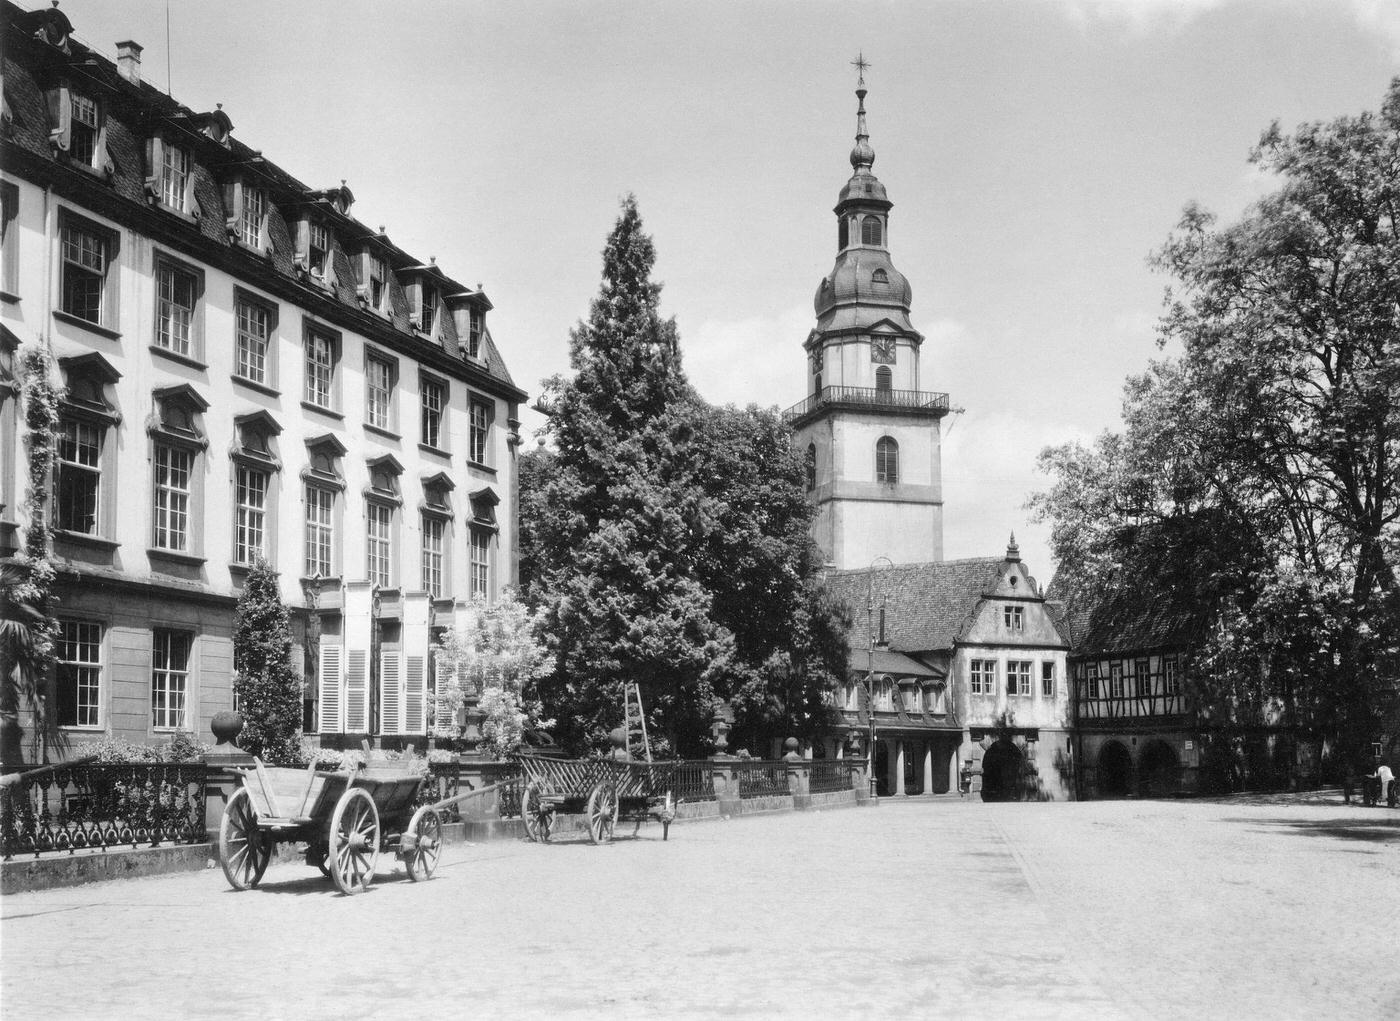 Erbach, Erbach im Odenwald: Stadtkirche, Rathaus und Schloss, 1930